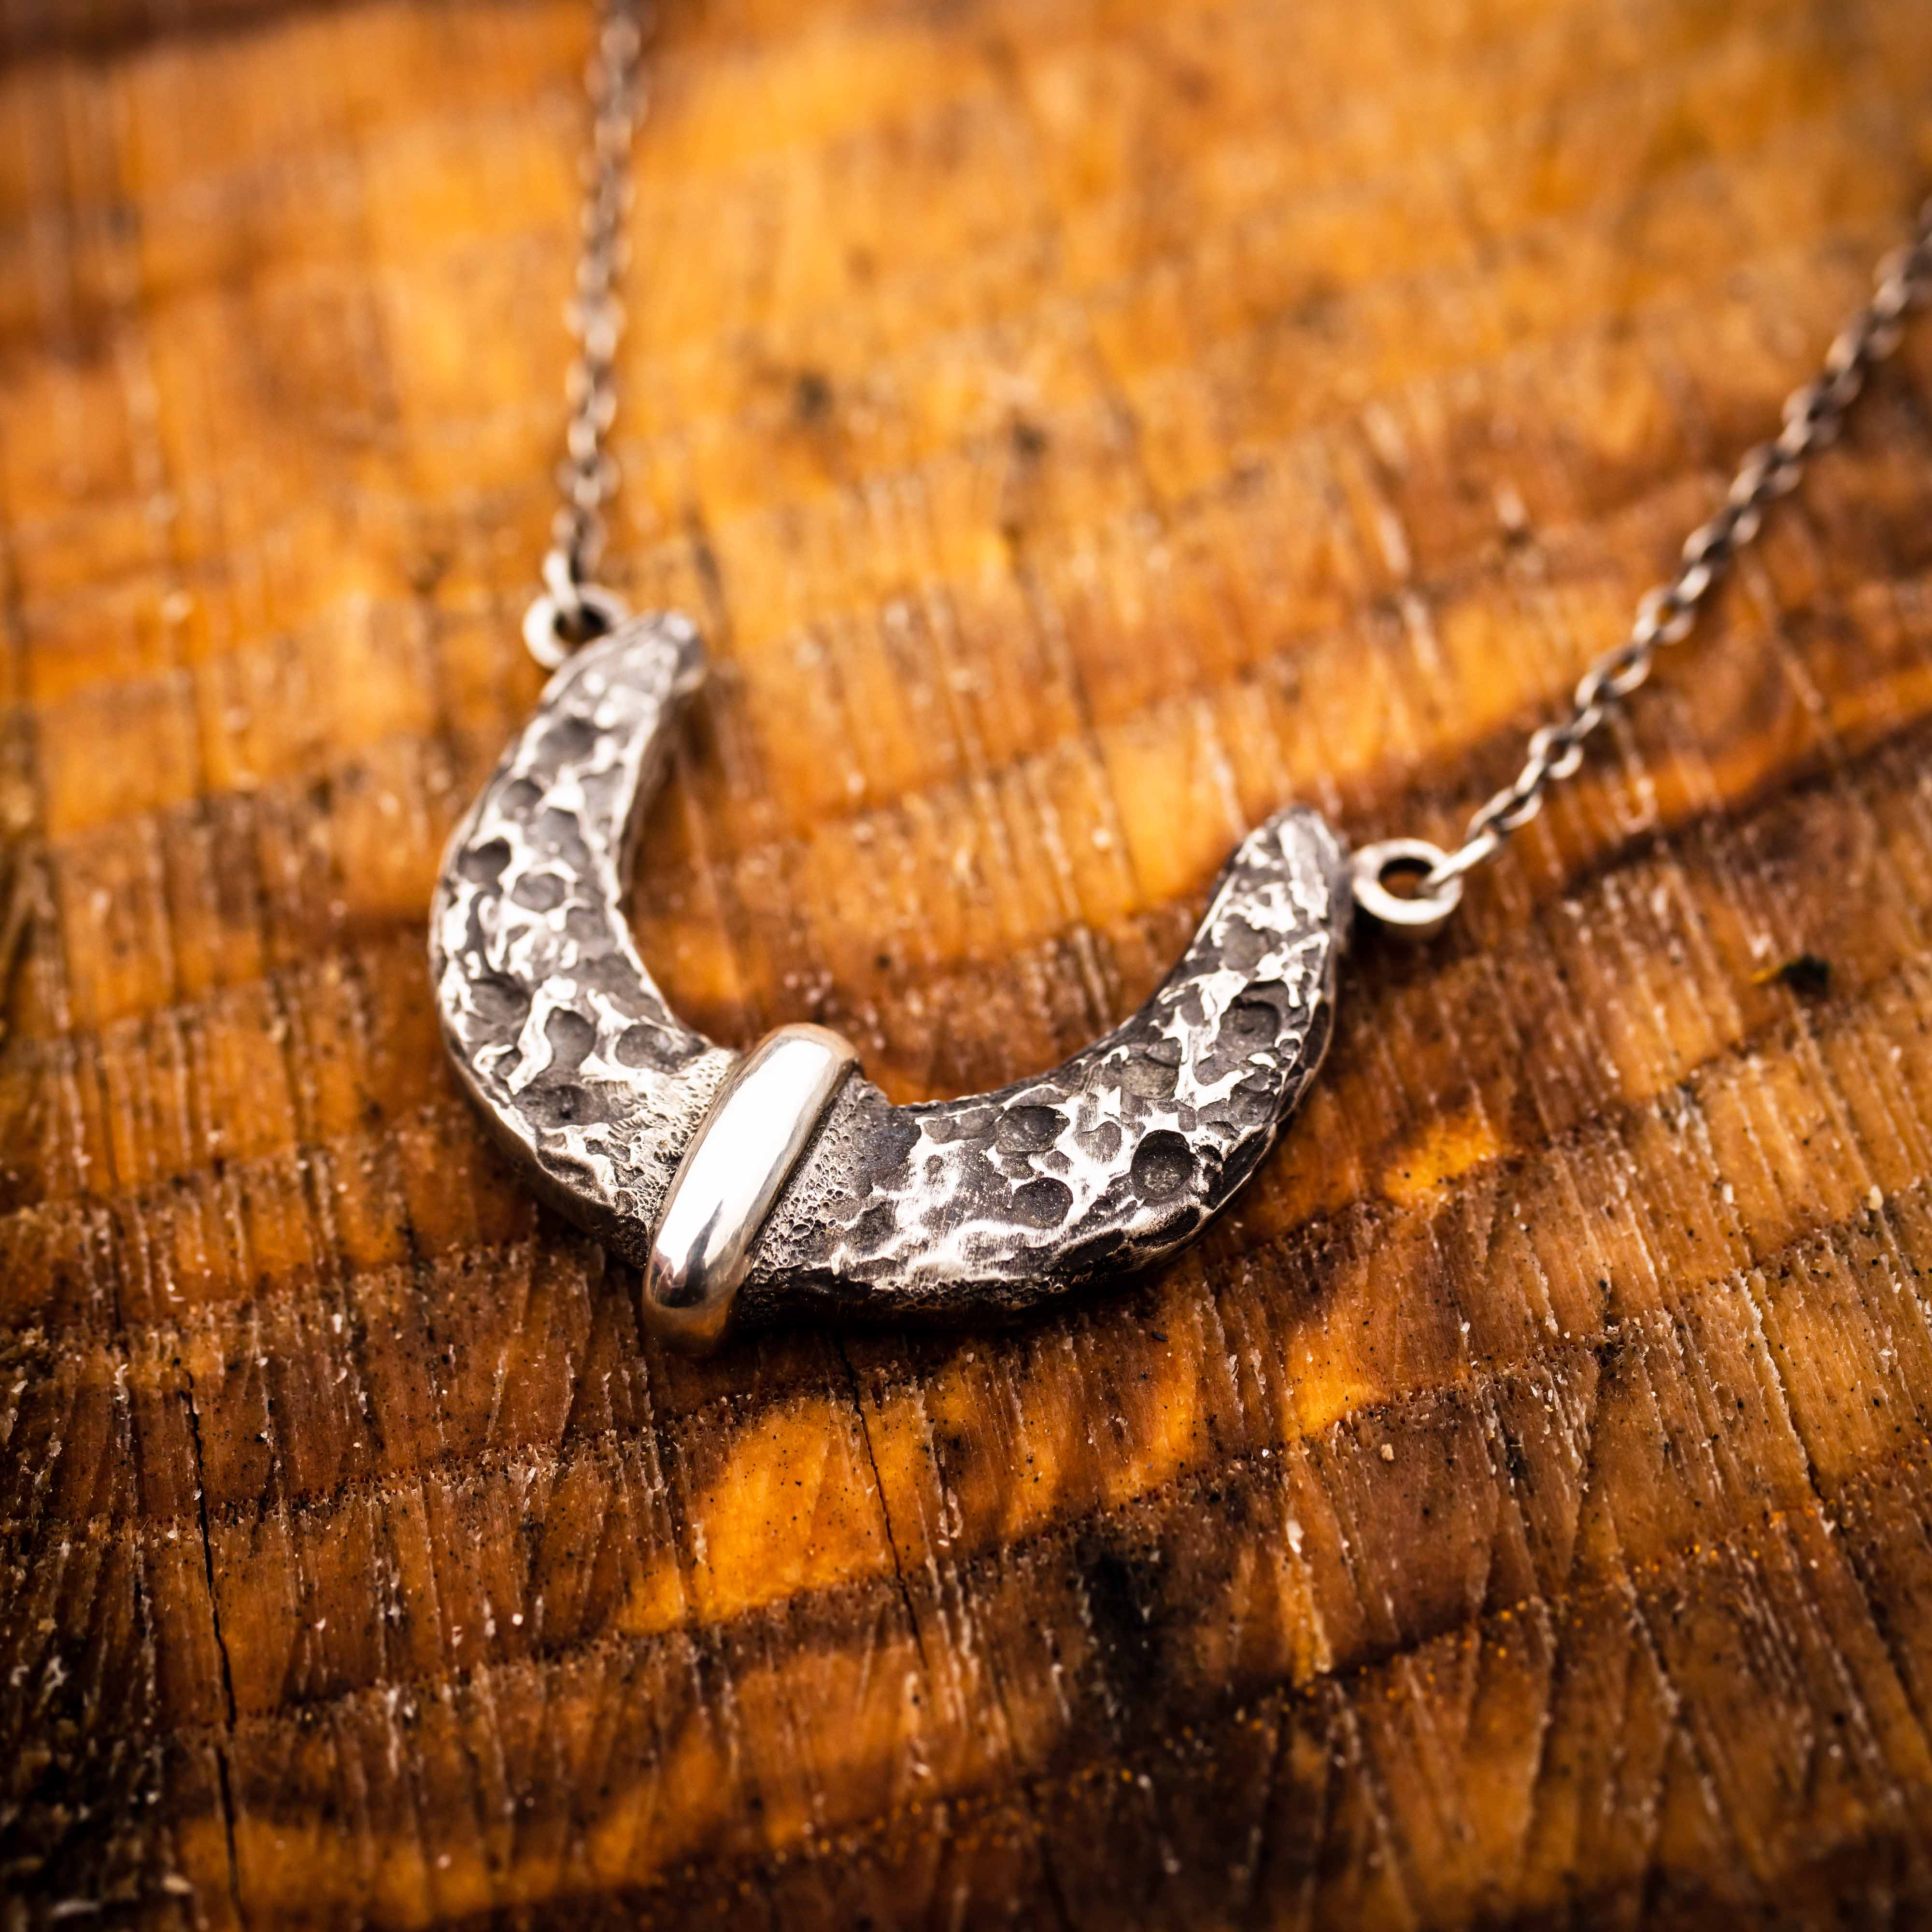 Knochen meines Knochens Halskette-940 Argentium Sterling Silber